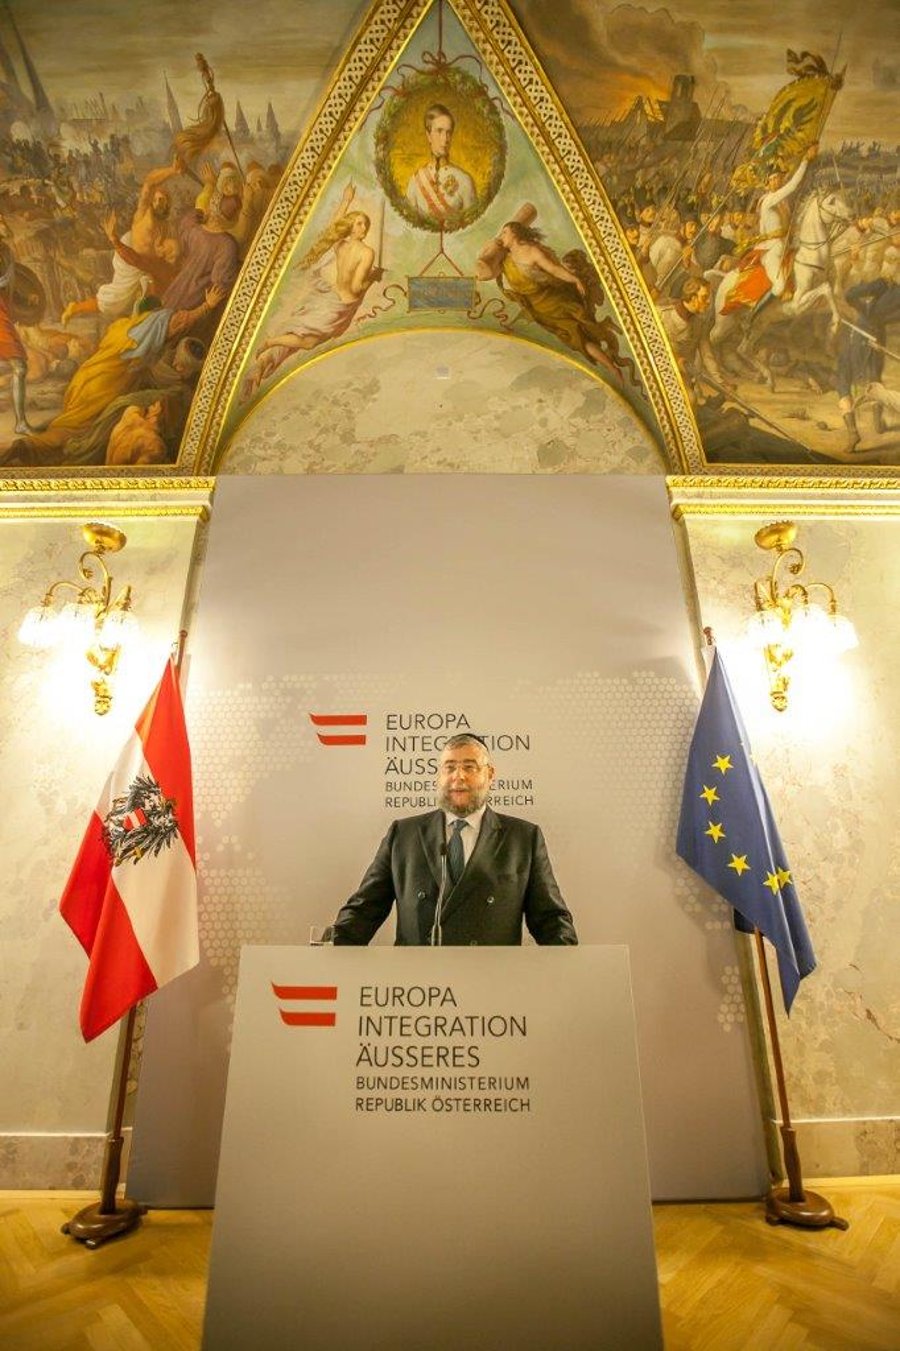 שר החוץ האוסטרי: "לאוסטריה יש חוב גדול כלפי העם היהודי"